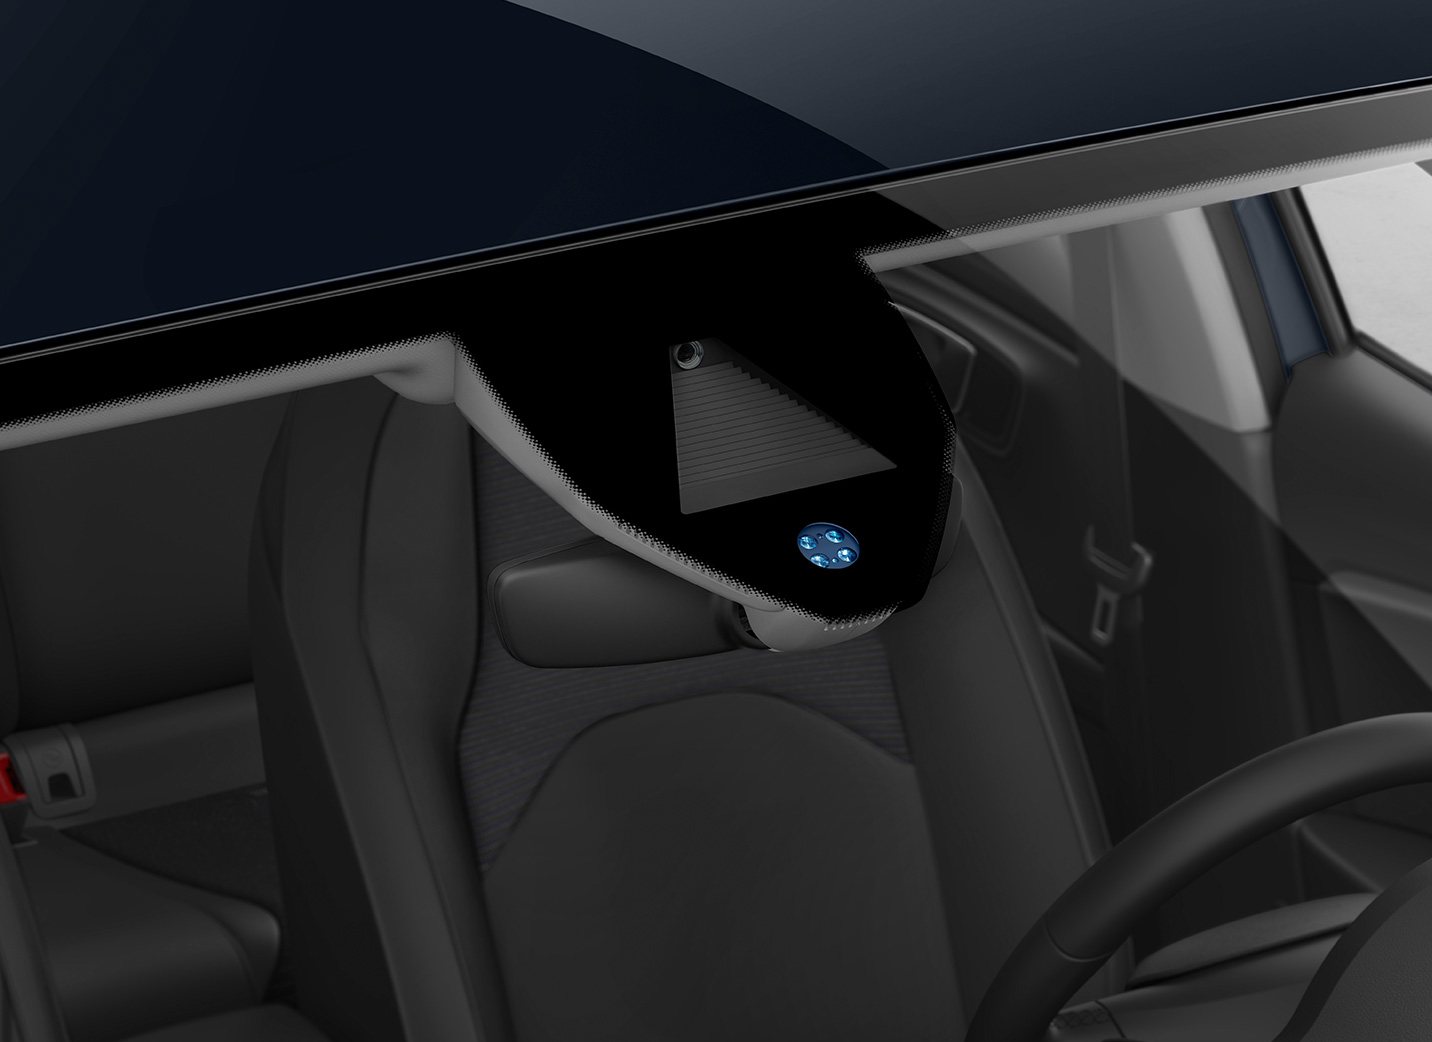 SEAT Leon interior technology rain light sensors